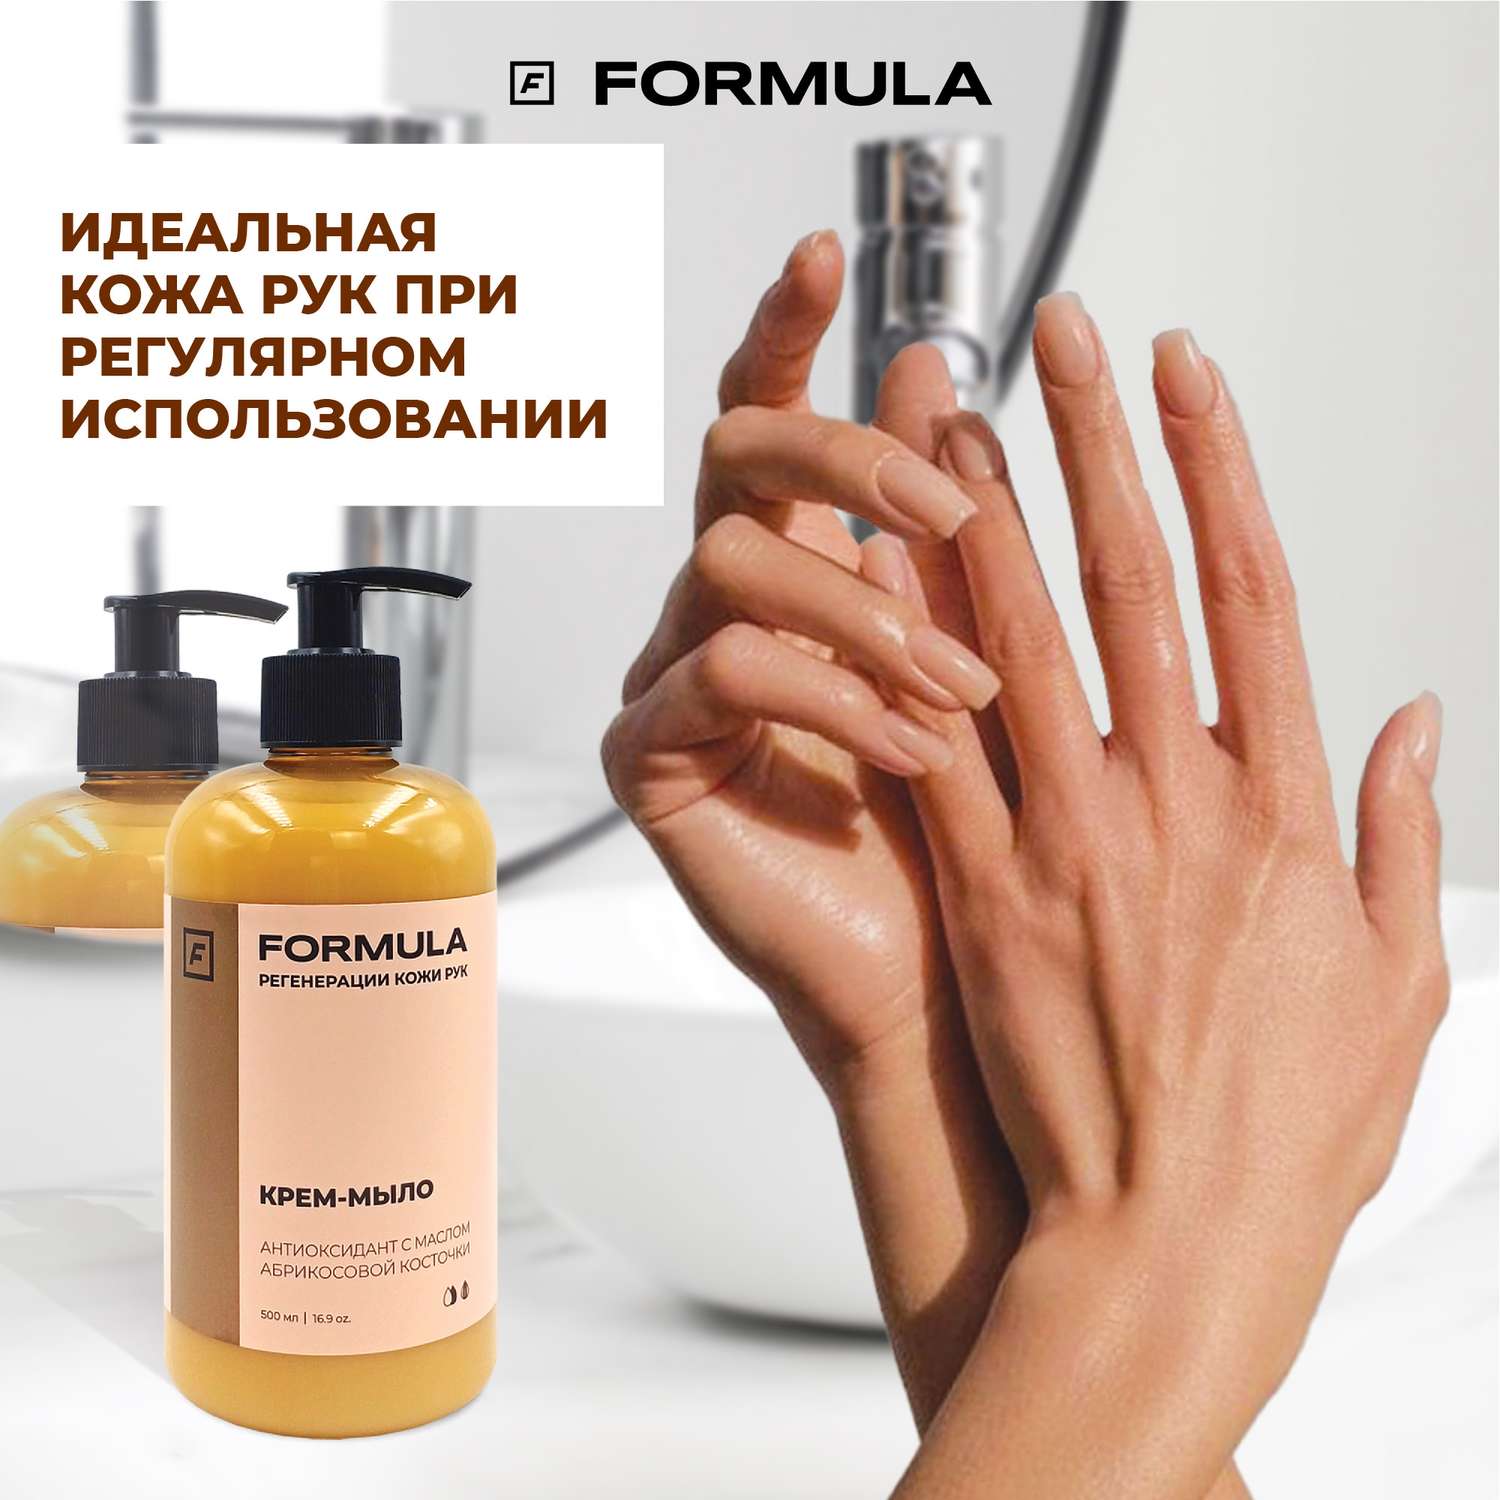 Крем-мыло F Formula антиоксидант с с маслом абрикосовой косточки 300 мл - фото 5